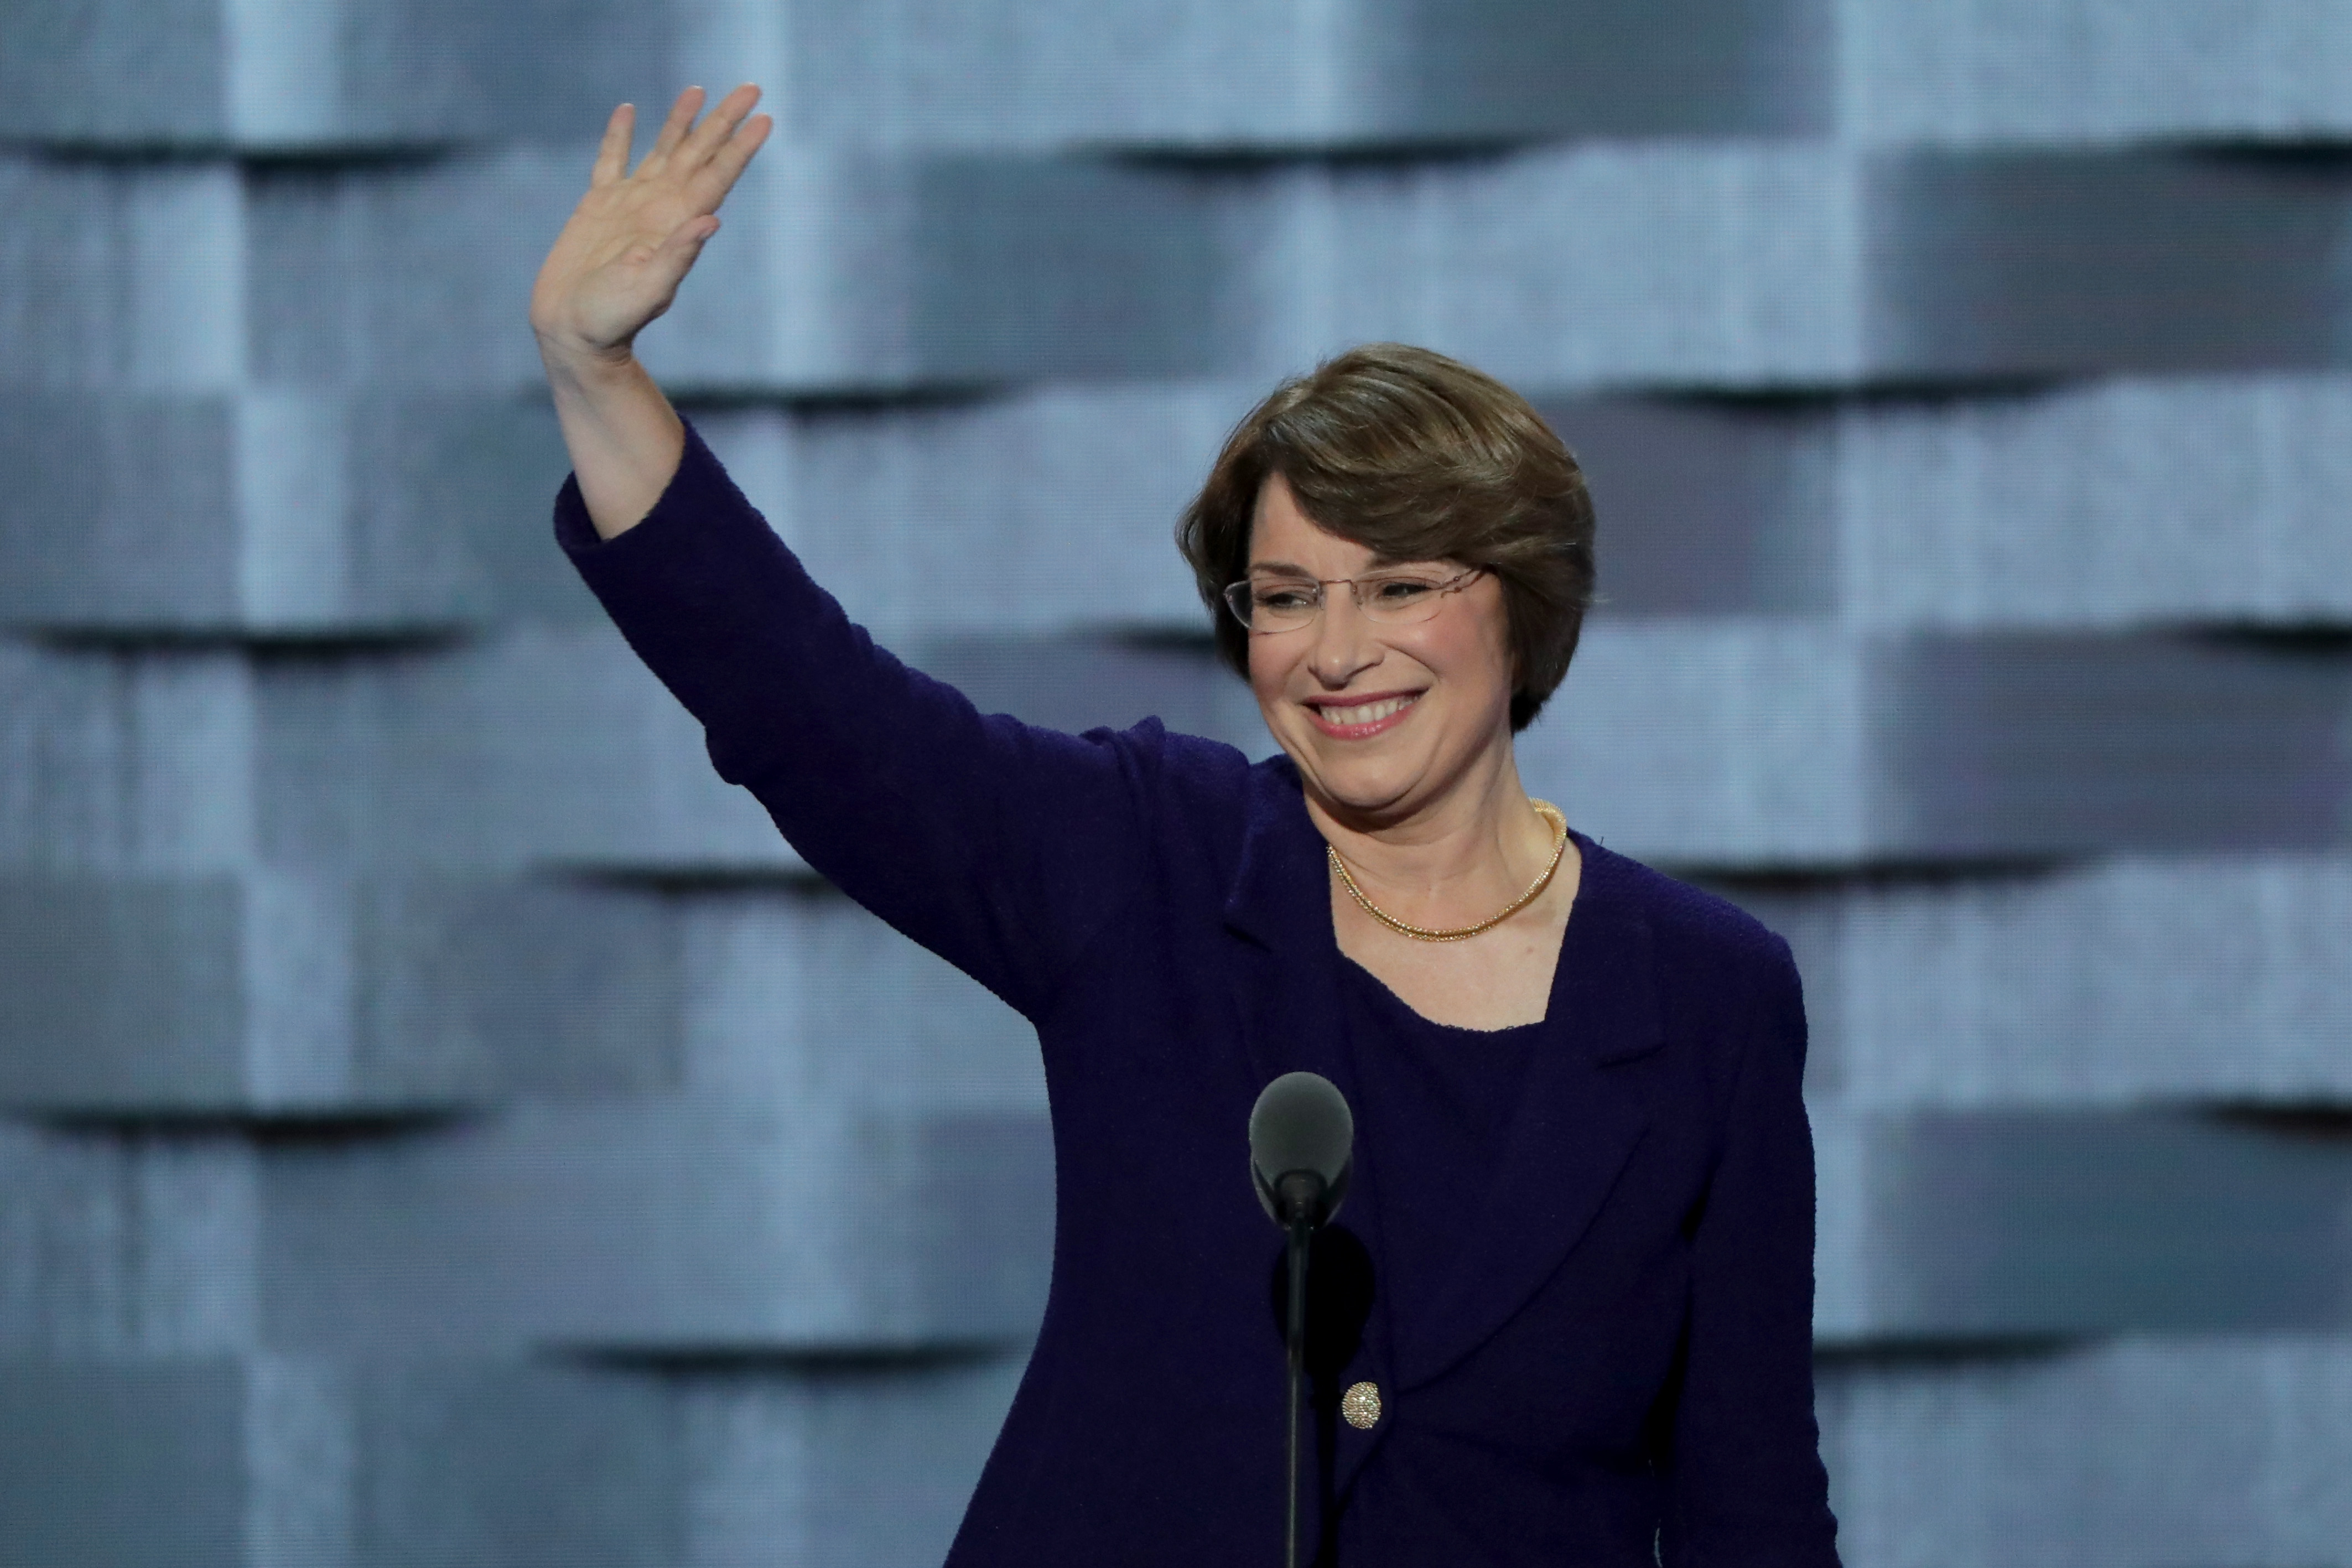 La senatrice Amy Klobuchar ha annunciato la sua candidatura alle primarie Democratiche per le elezioni presidenziali del 2020